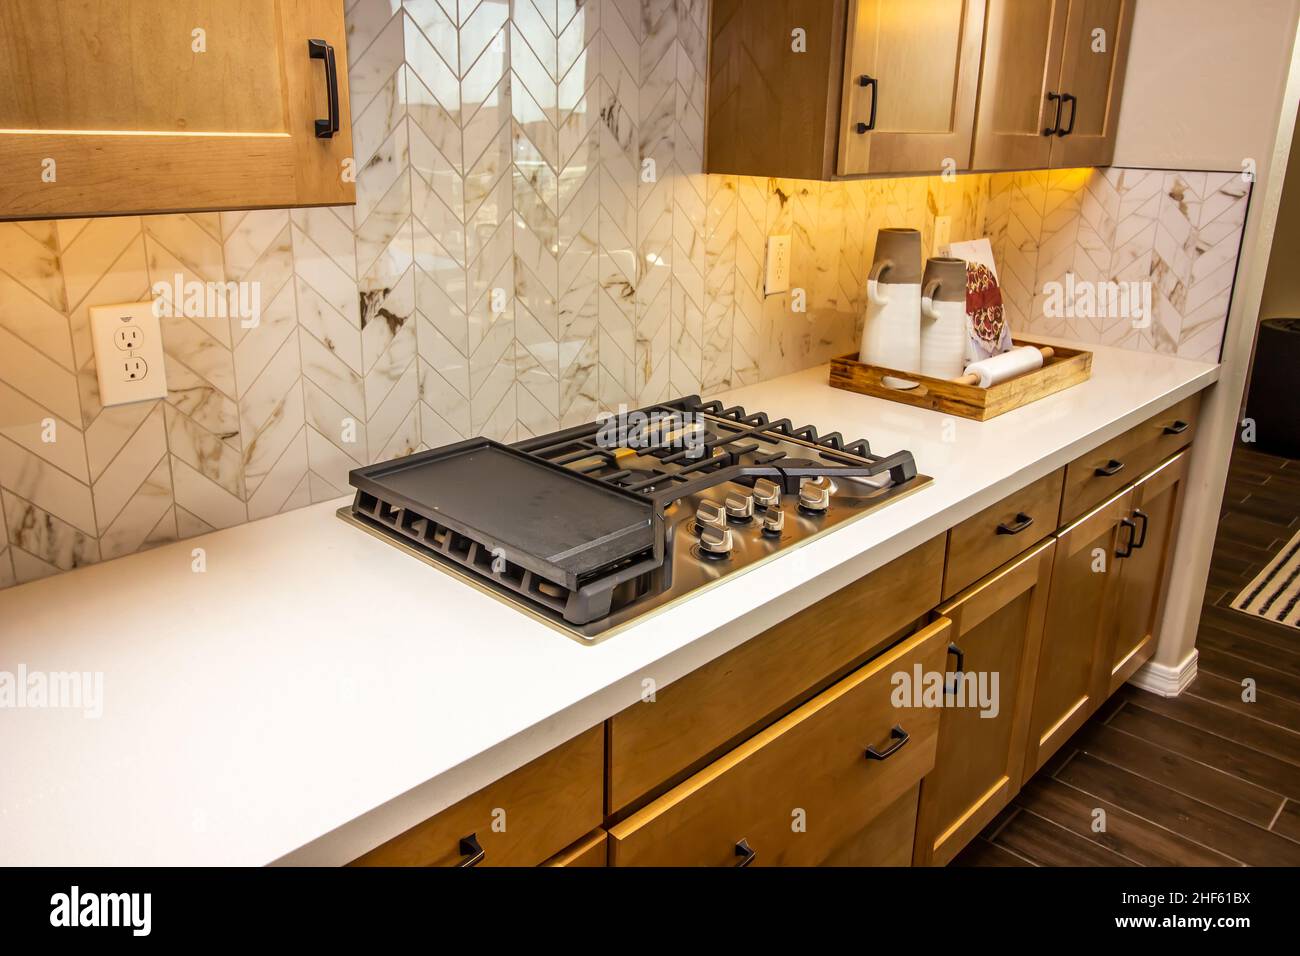 Comptoir de cuisine avec plateau de cuisson au gaz et plateau en bois de pichets à café Banque D'Images